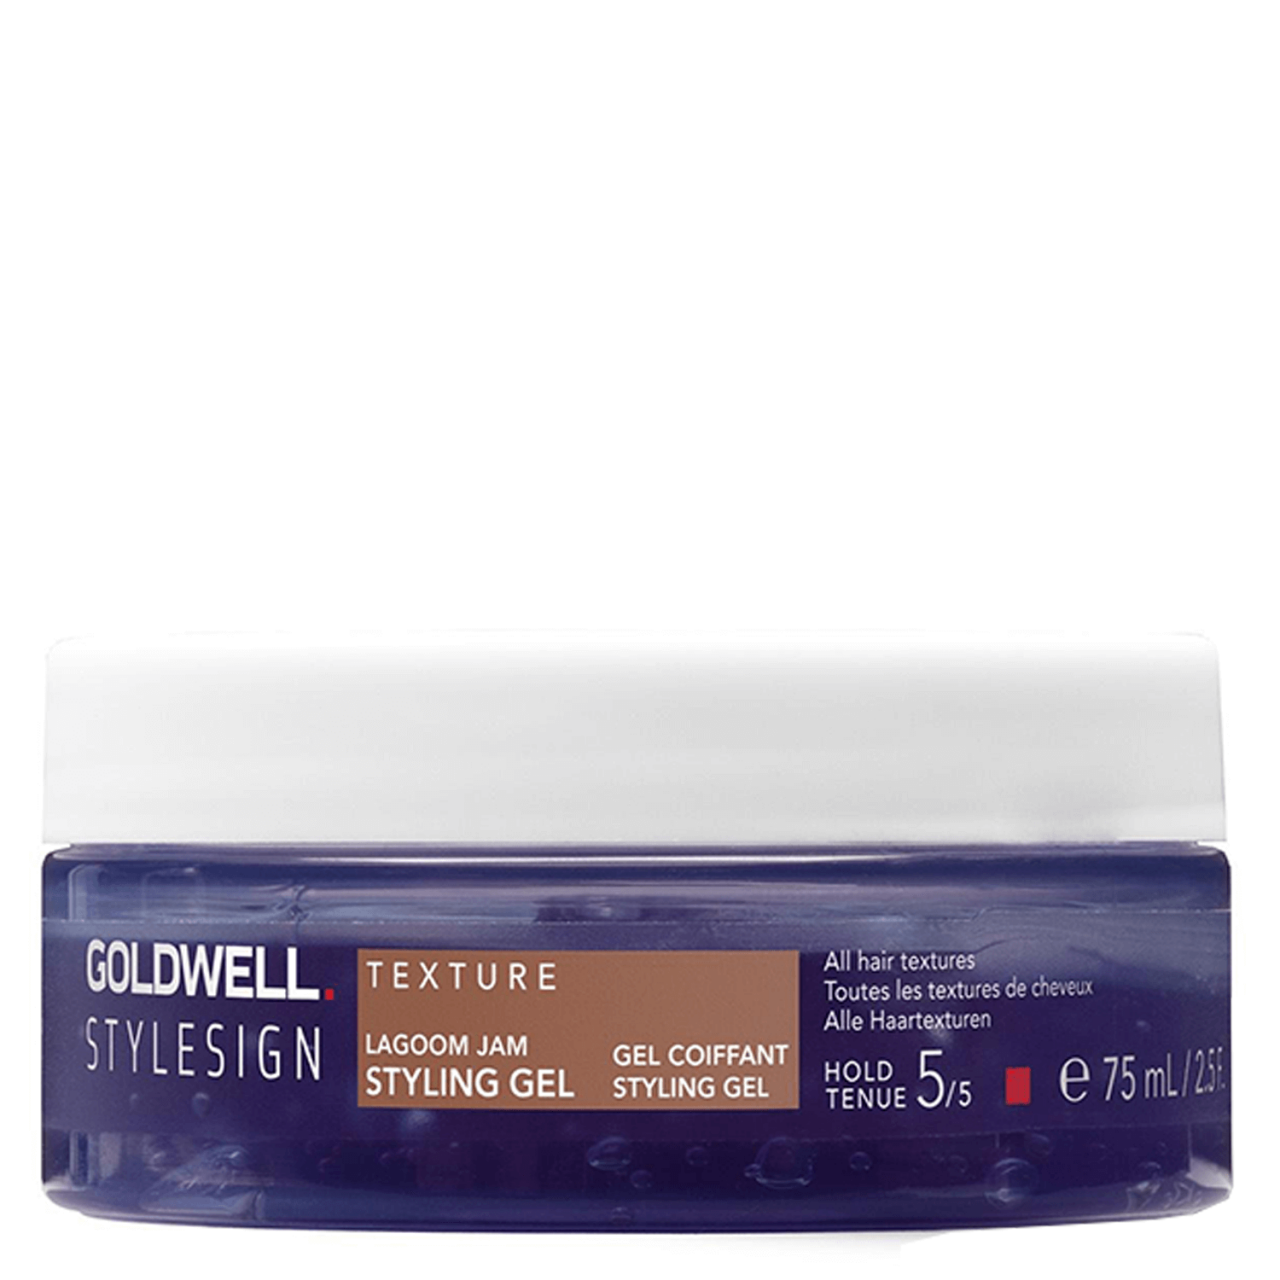 StyleSign - texture lagoom jam styling gel travel size von Goldwell